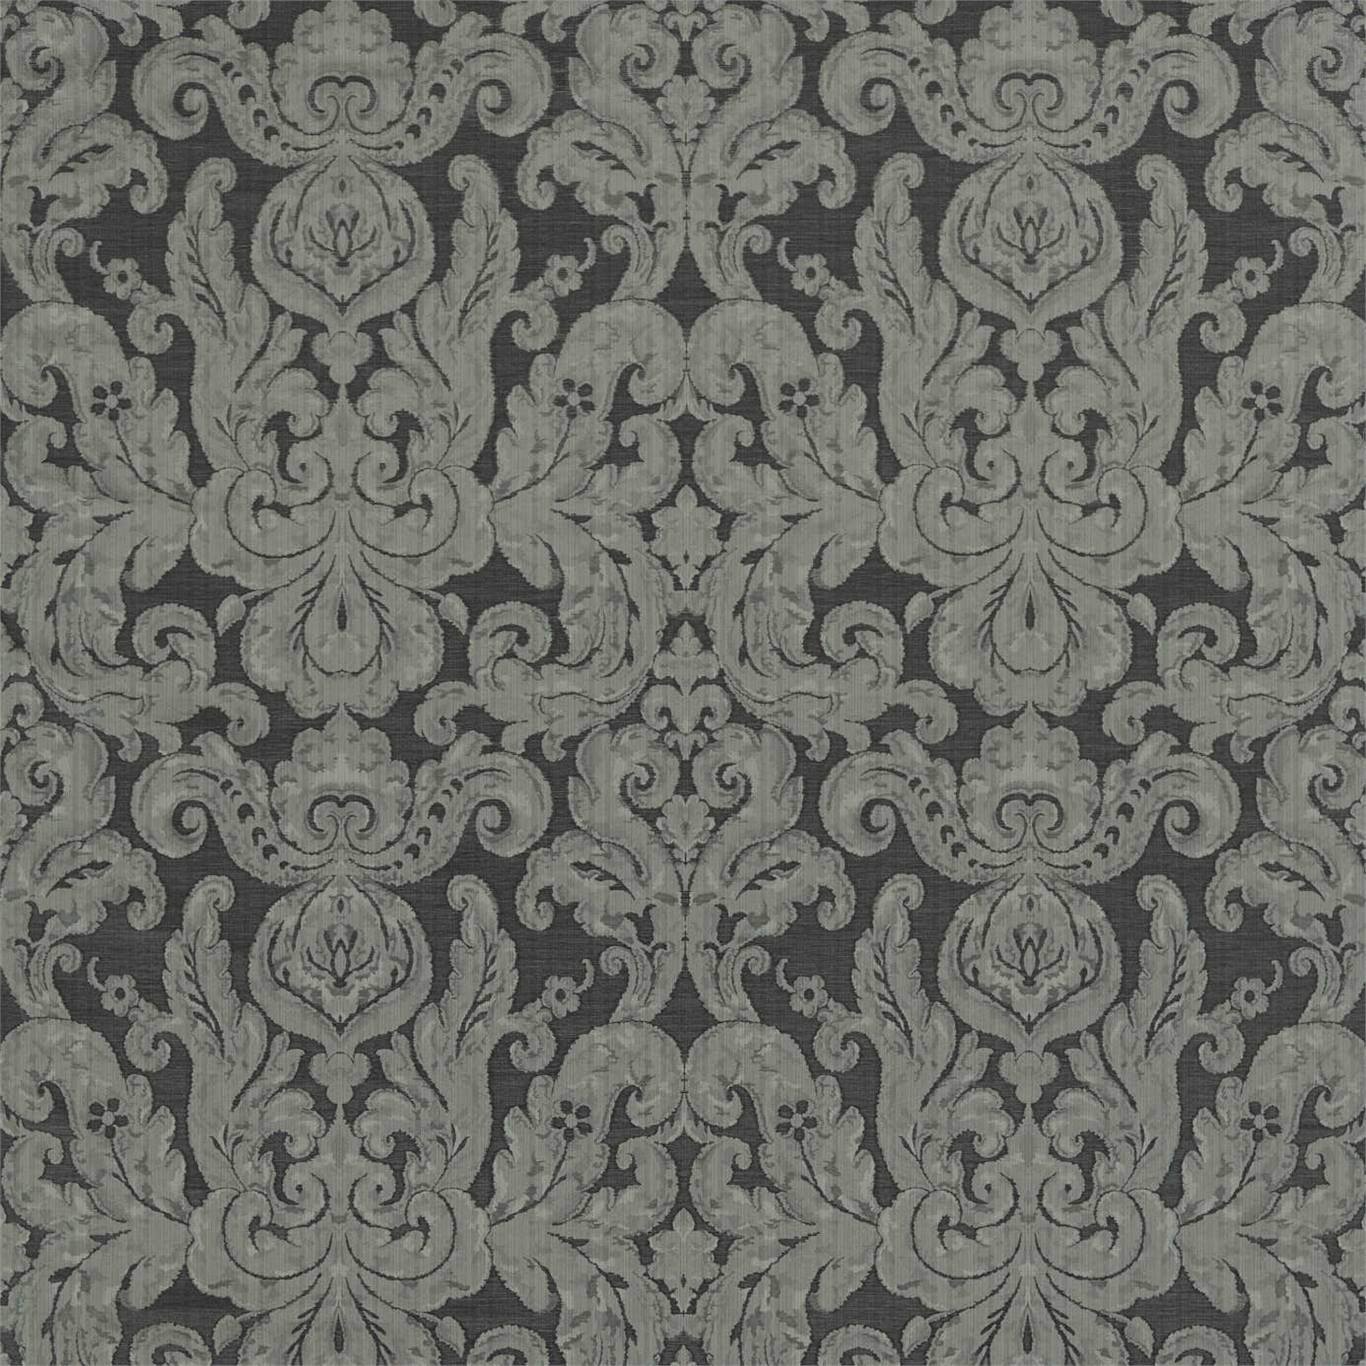 Brocatello Gargoyle Fabric by ZOF